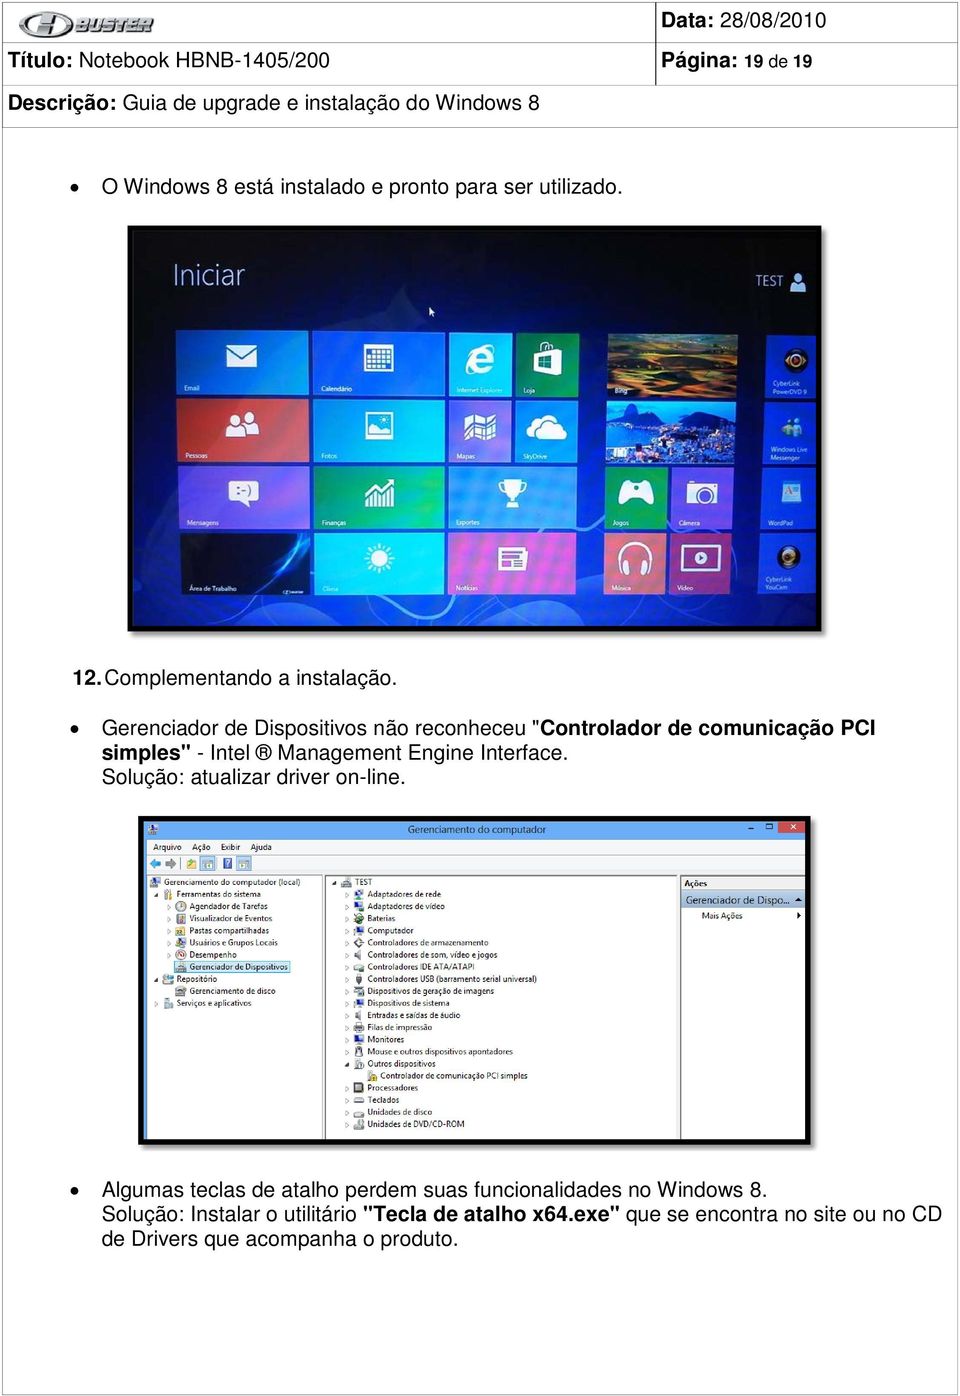 Gerenciador de Dispositivos não reconheceu "Controlador de comunicação PCI simples" - Intel Management Engine Interface.